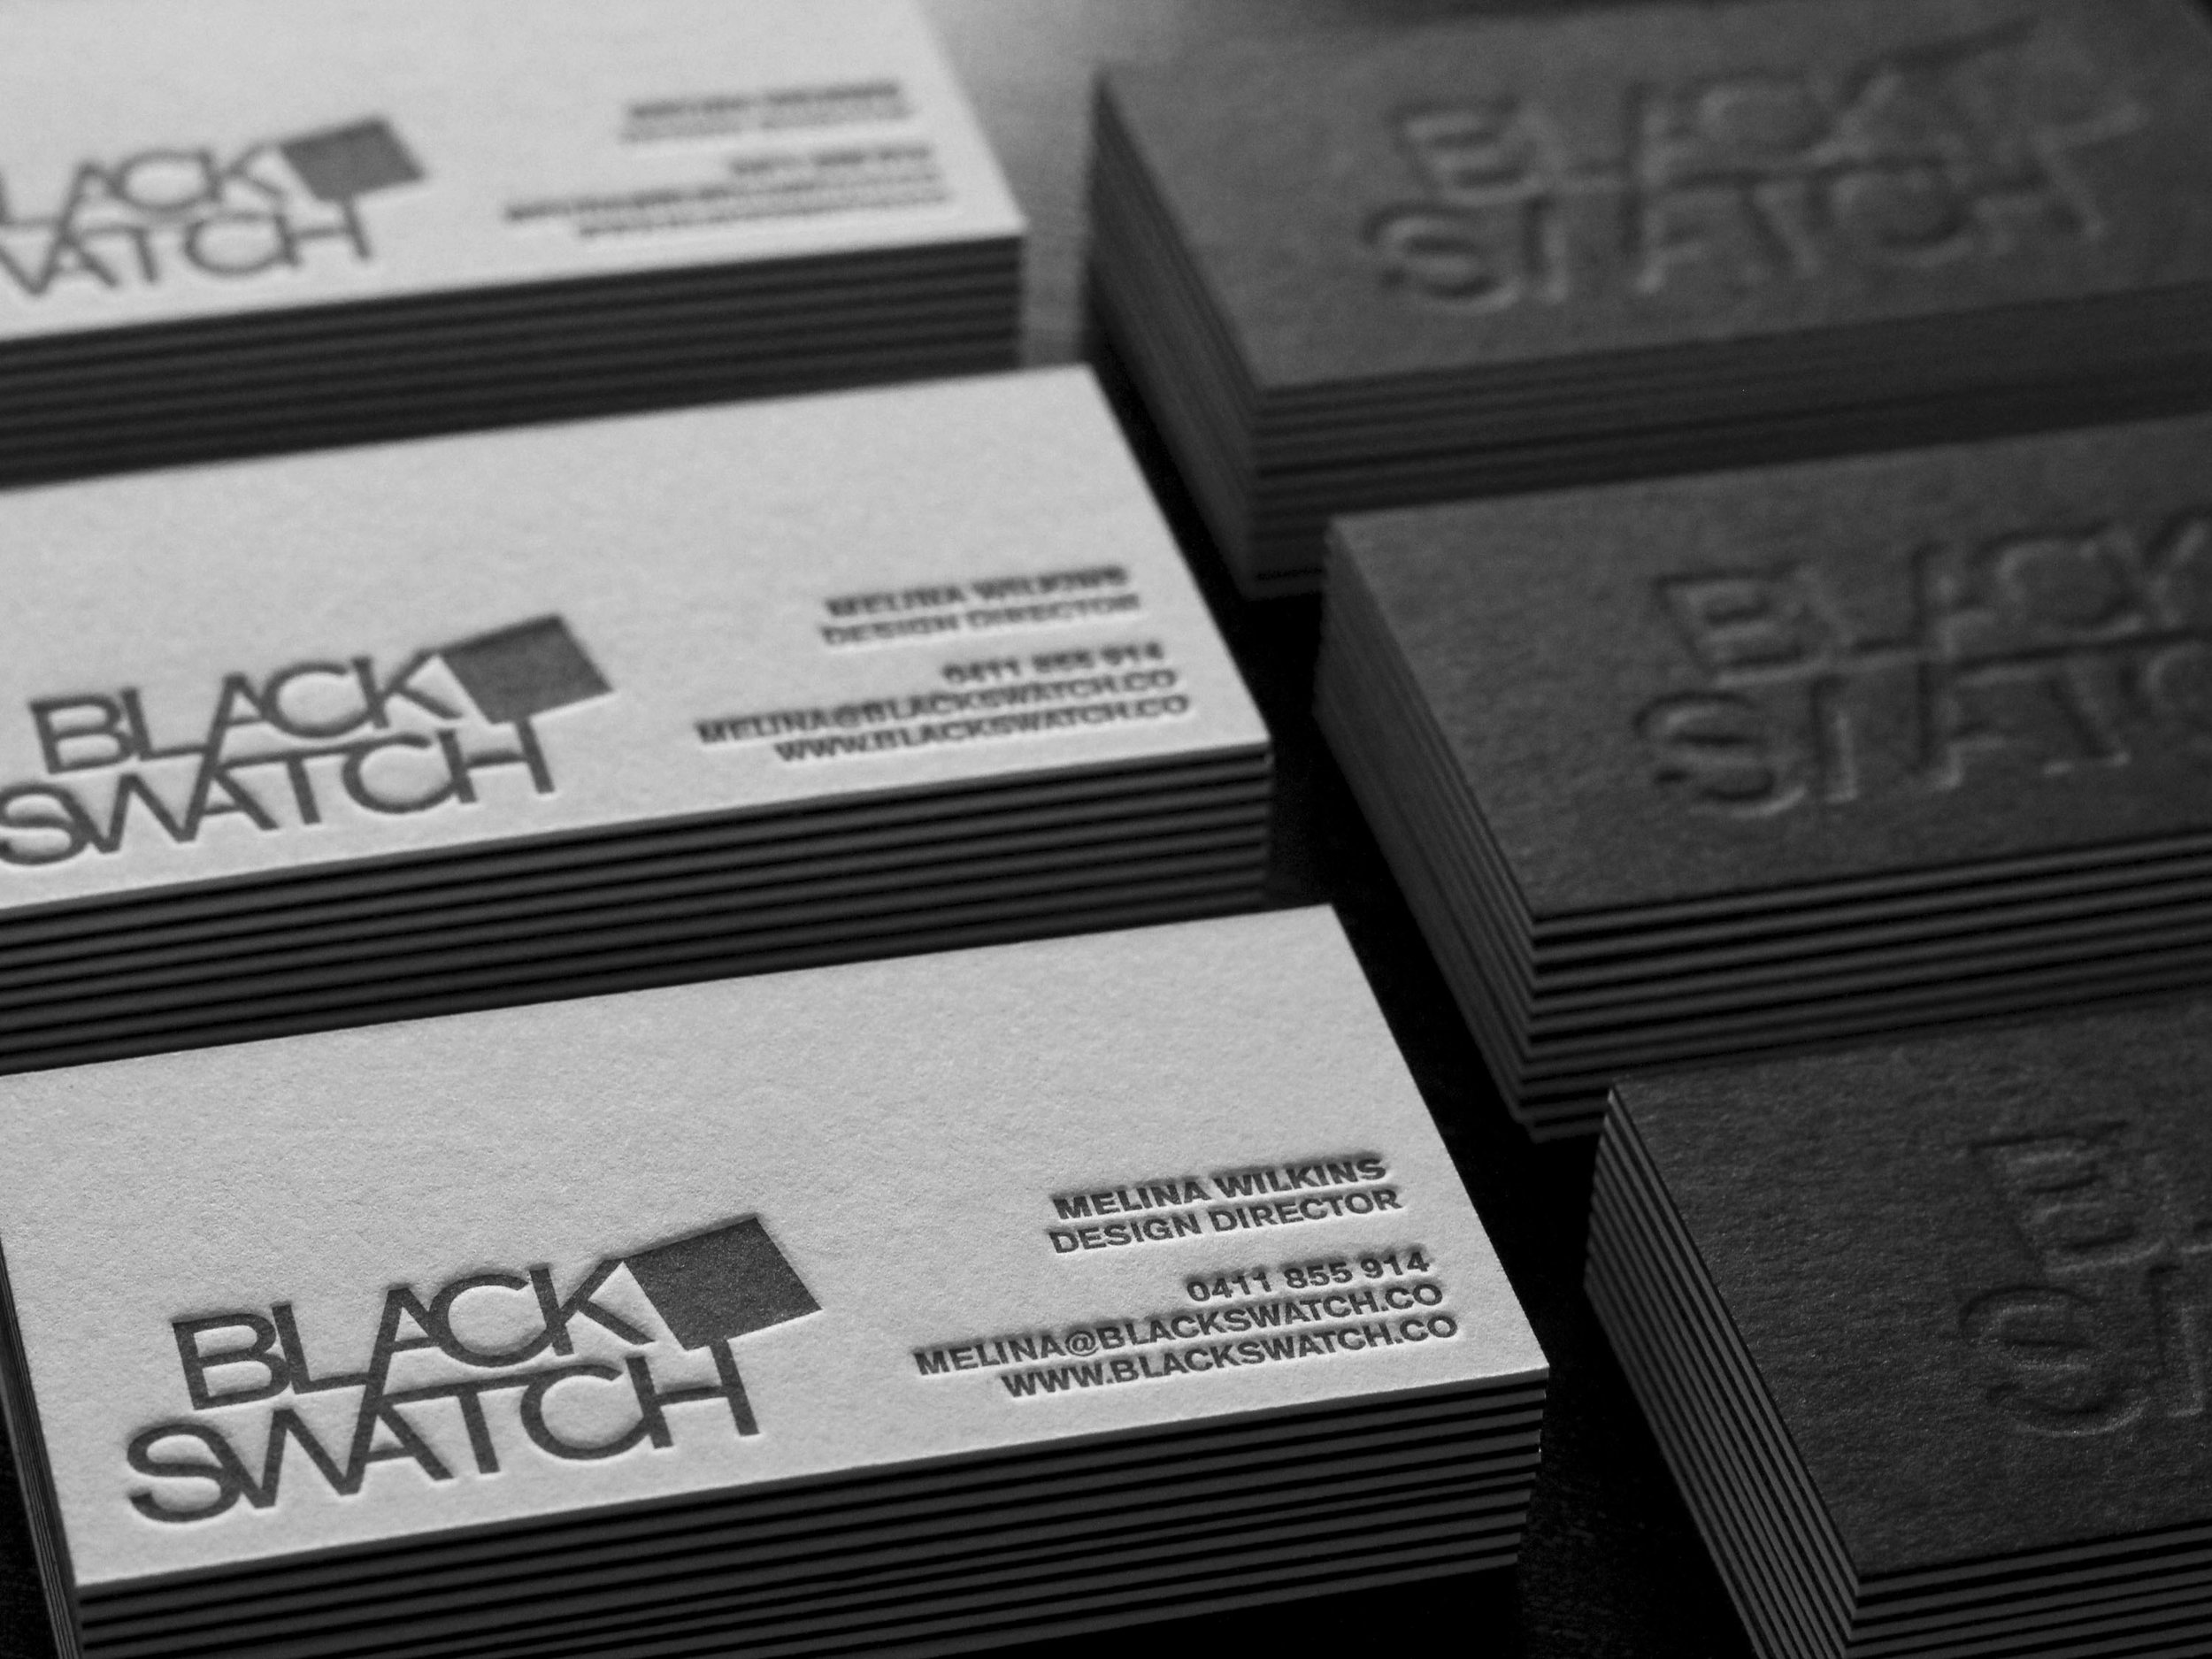 BLACKSWATCH_SELF PROMO_packaging2 copy.jpg